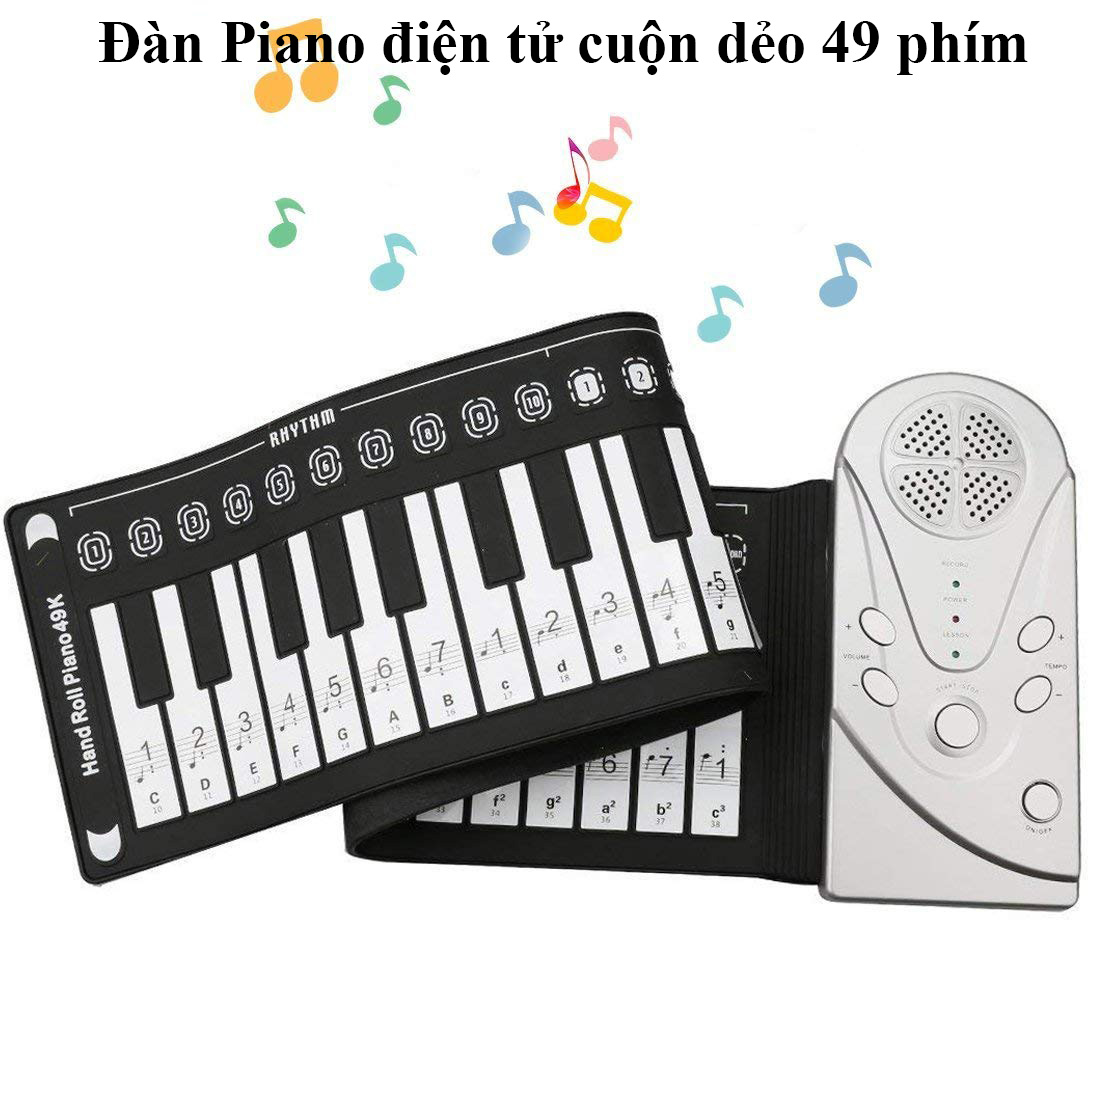 Bộ Đàn Piano Điện Tử, Đàn Piano Đàn Organ. đàn piano mini cho trẻ, Loa Trong Với Âm Thanh Ngọt...